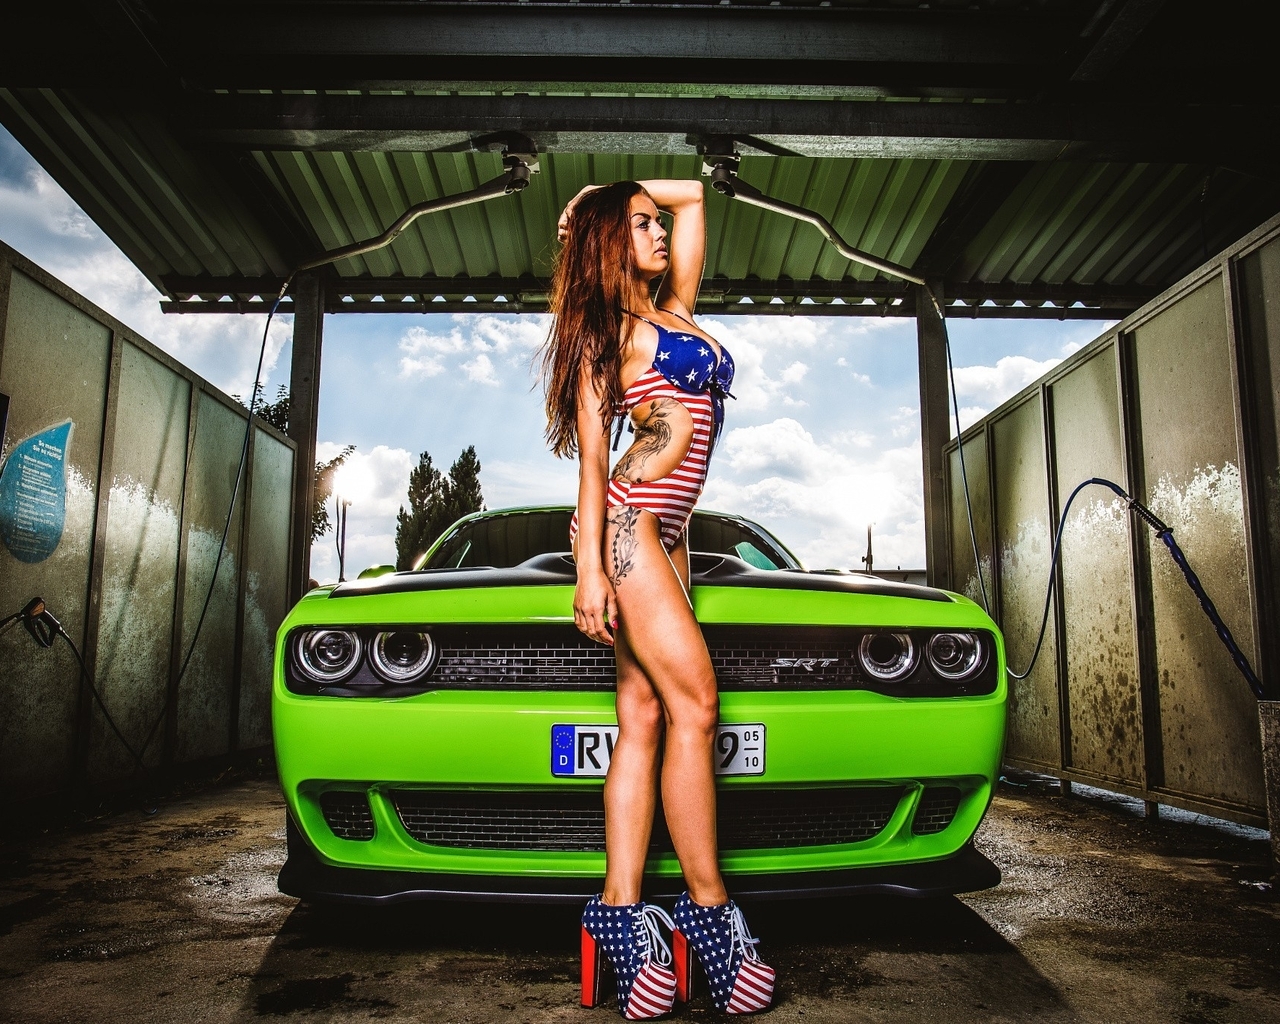 Картинка: Девушка, купальник, тату, туфли, автомойка, автомобиль, Америка, зелёный